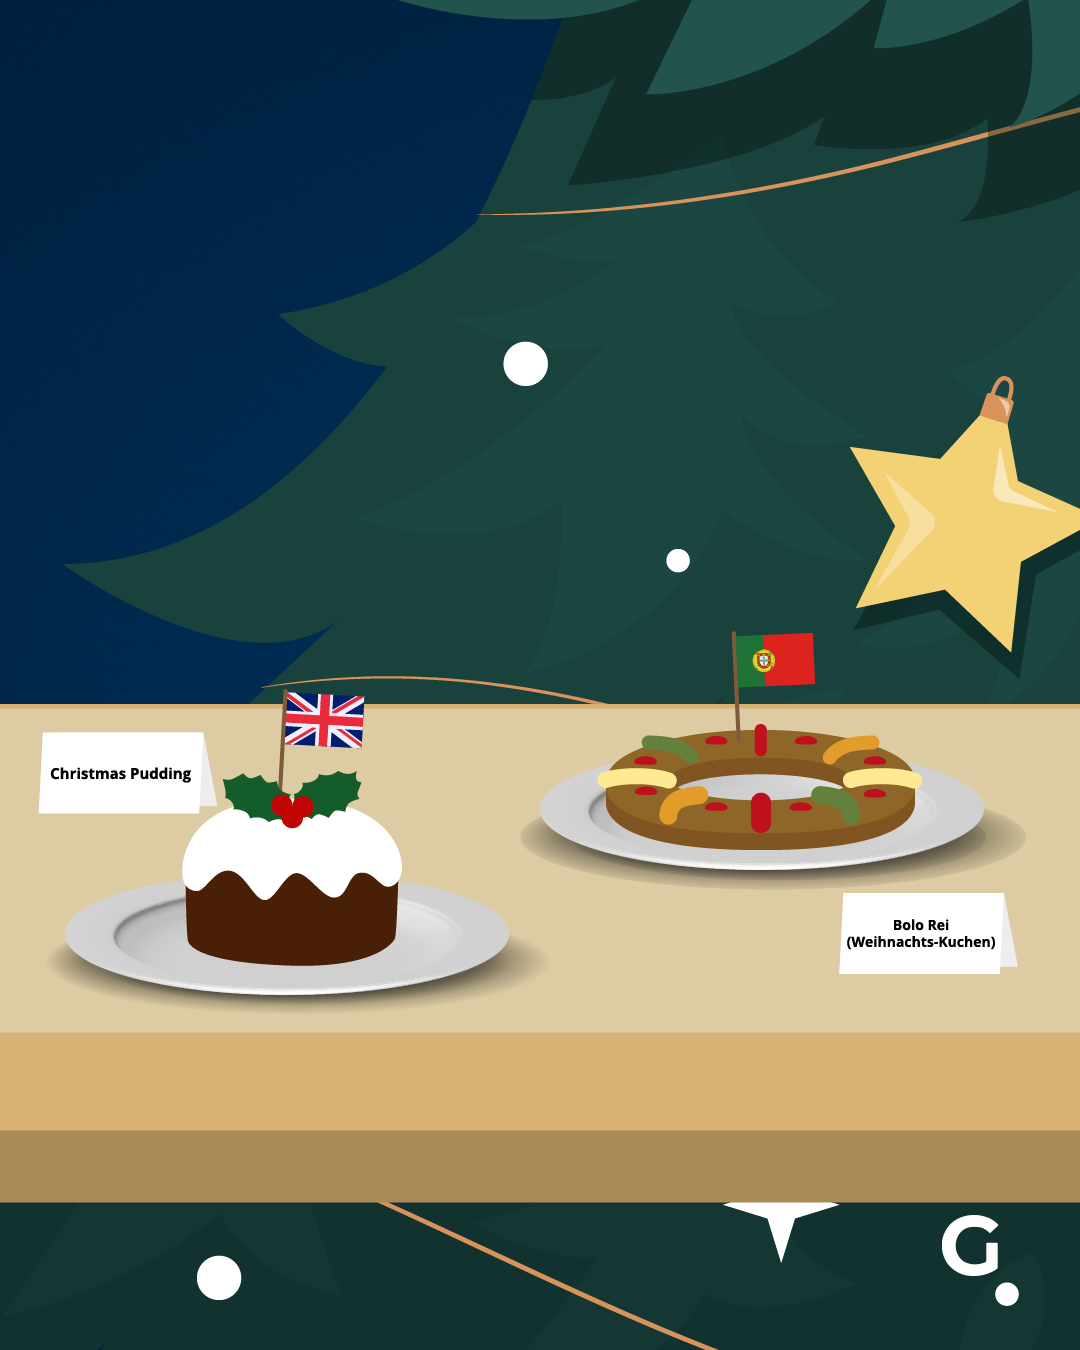 Der englische Christmas-Pudding ist nicht süß, sondern eher eine Art Serviettenknödel mit Nüssen, Eiern und Rinder-Nierenfett. Im Portugal gibt es Bolo Rei, einen Weihnachtskuchen.&nbsp;